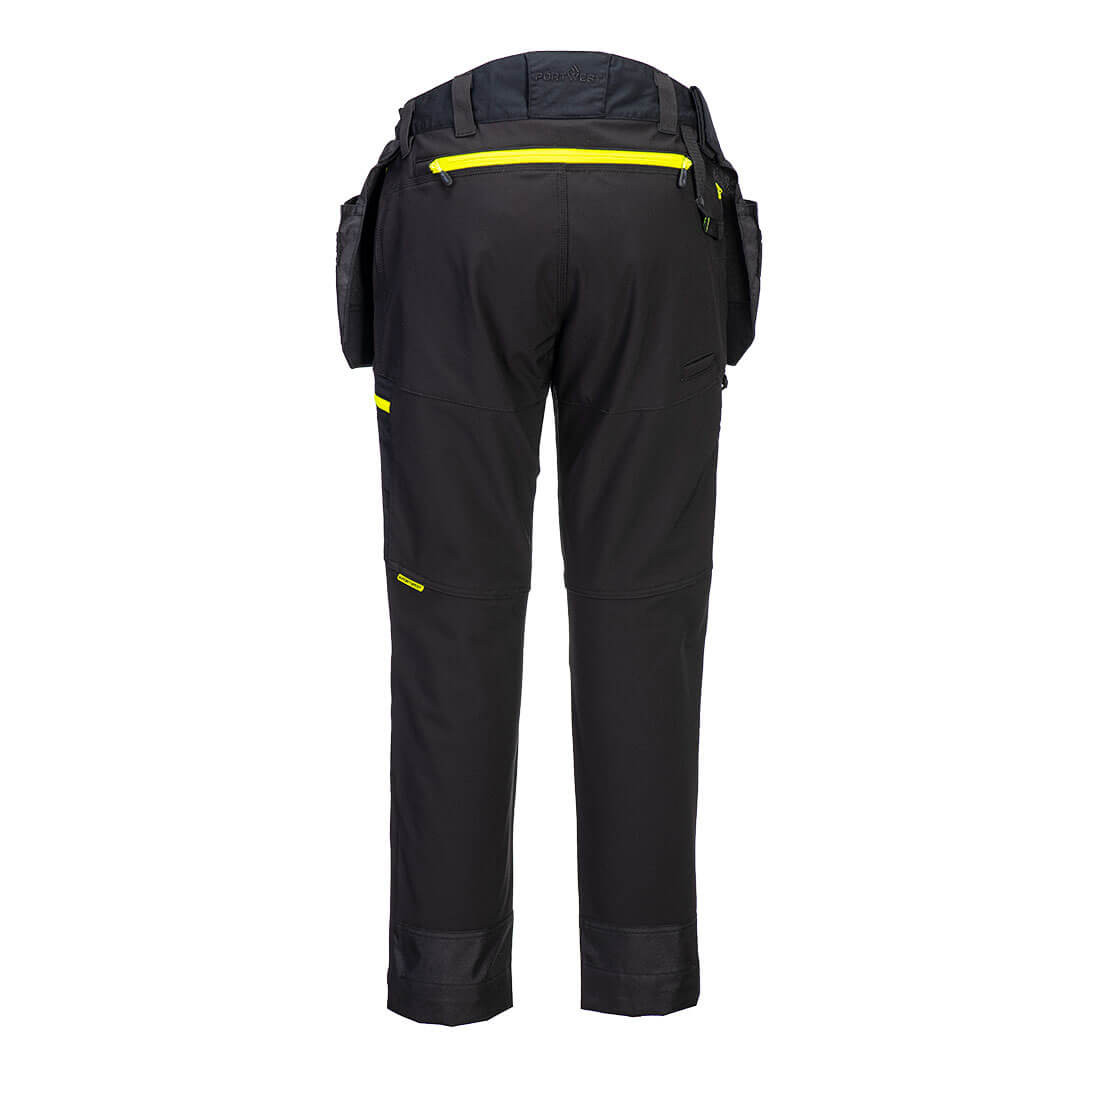 Pantalon DX4 poches flottantes démontables - Les vêtements de protection